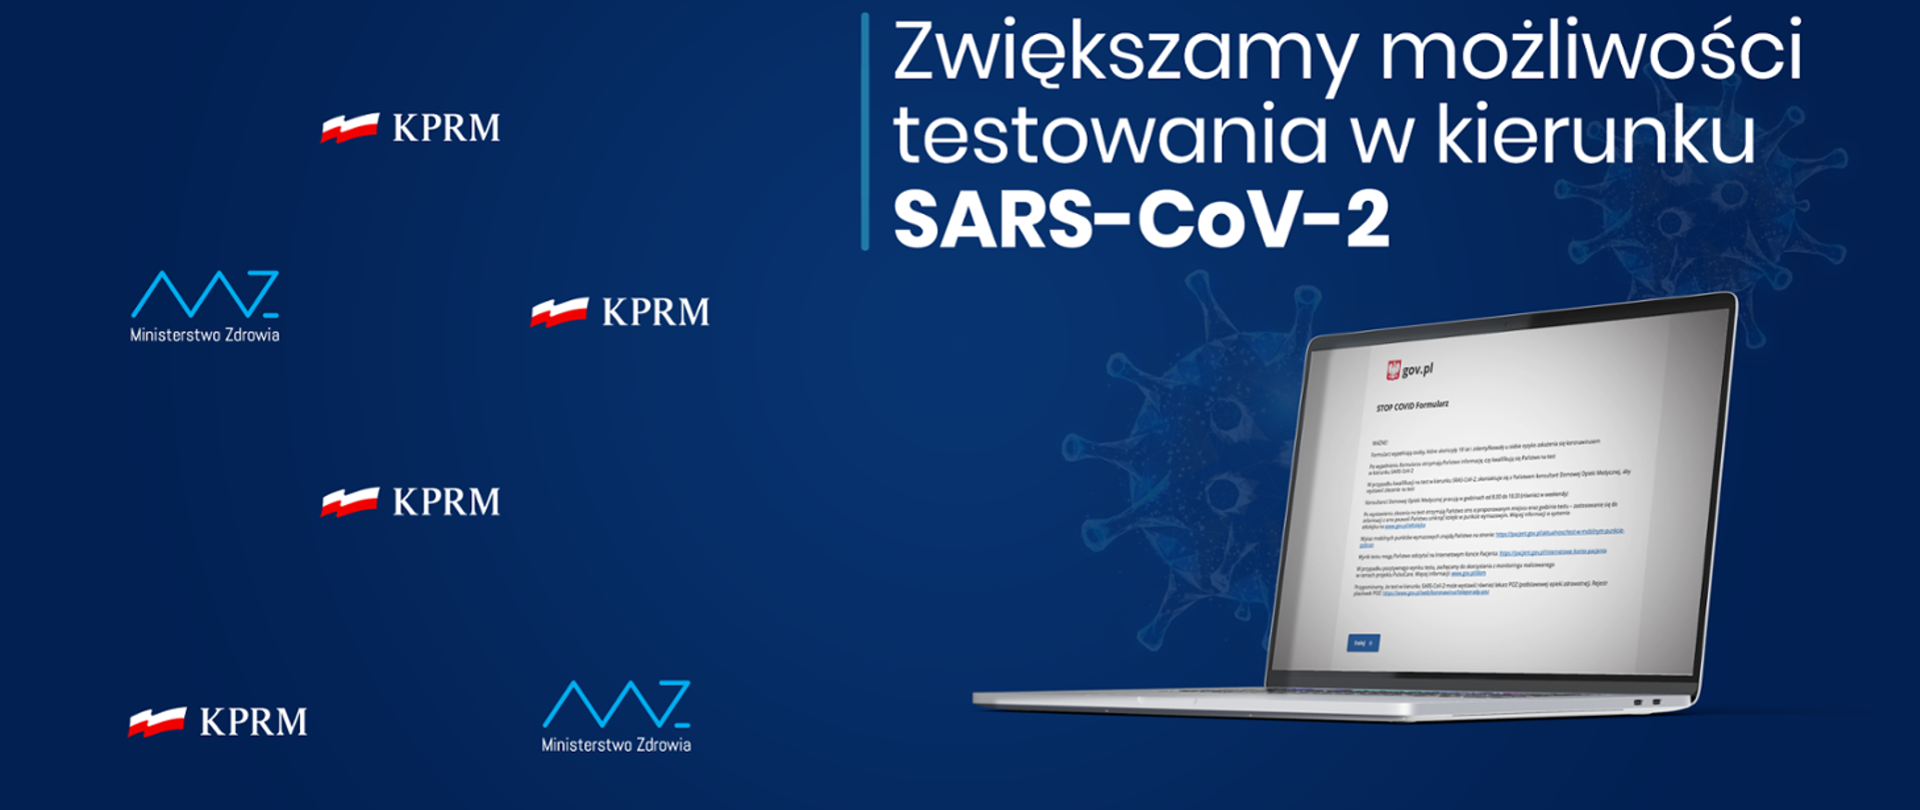 Baner informujący o zwiększeniu możliwości testowania w kierunku SARS-Cov-2